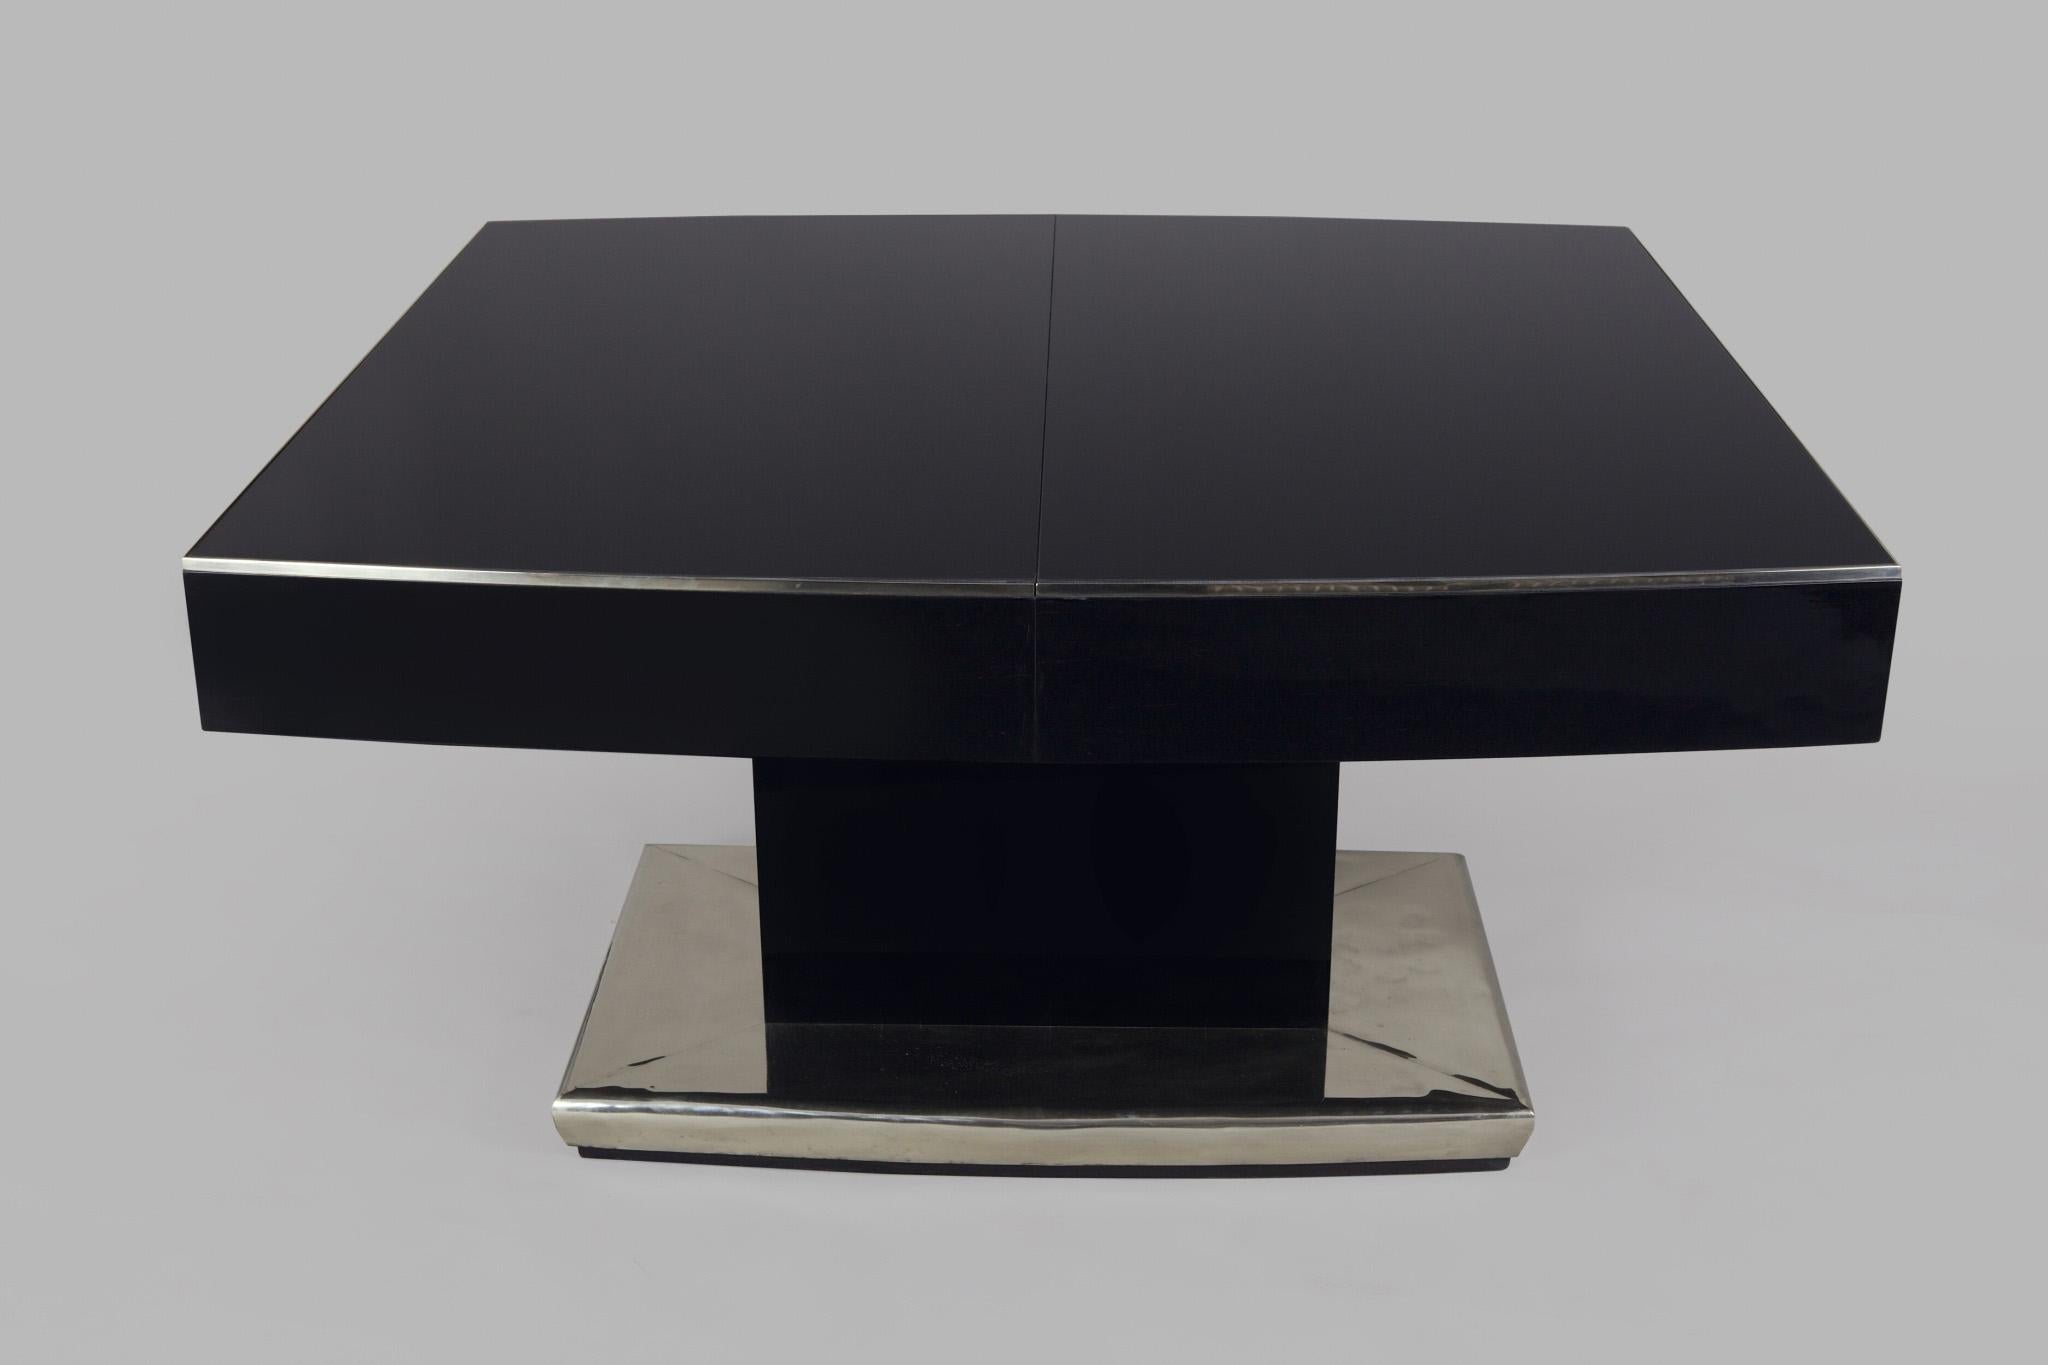 Fait partie de l'ensemble Functionalism - Table de salle à manger à rallonge en noir poli, dont les lignes longitudinales sont courbées de manière convexe. La planche supérieure est en verre noir. La table est chromée.